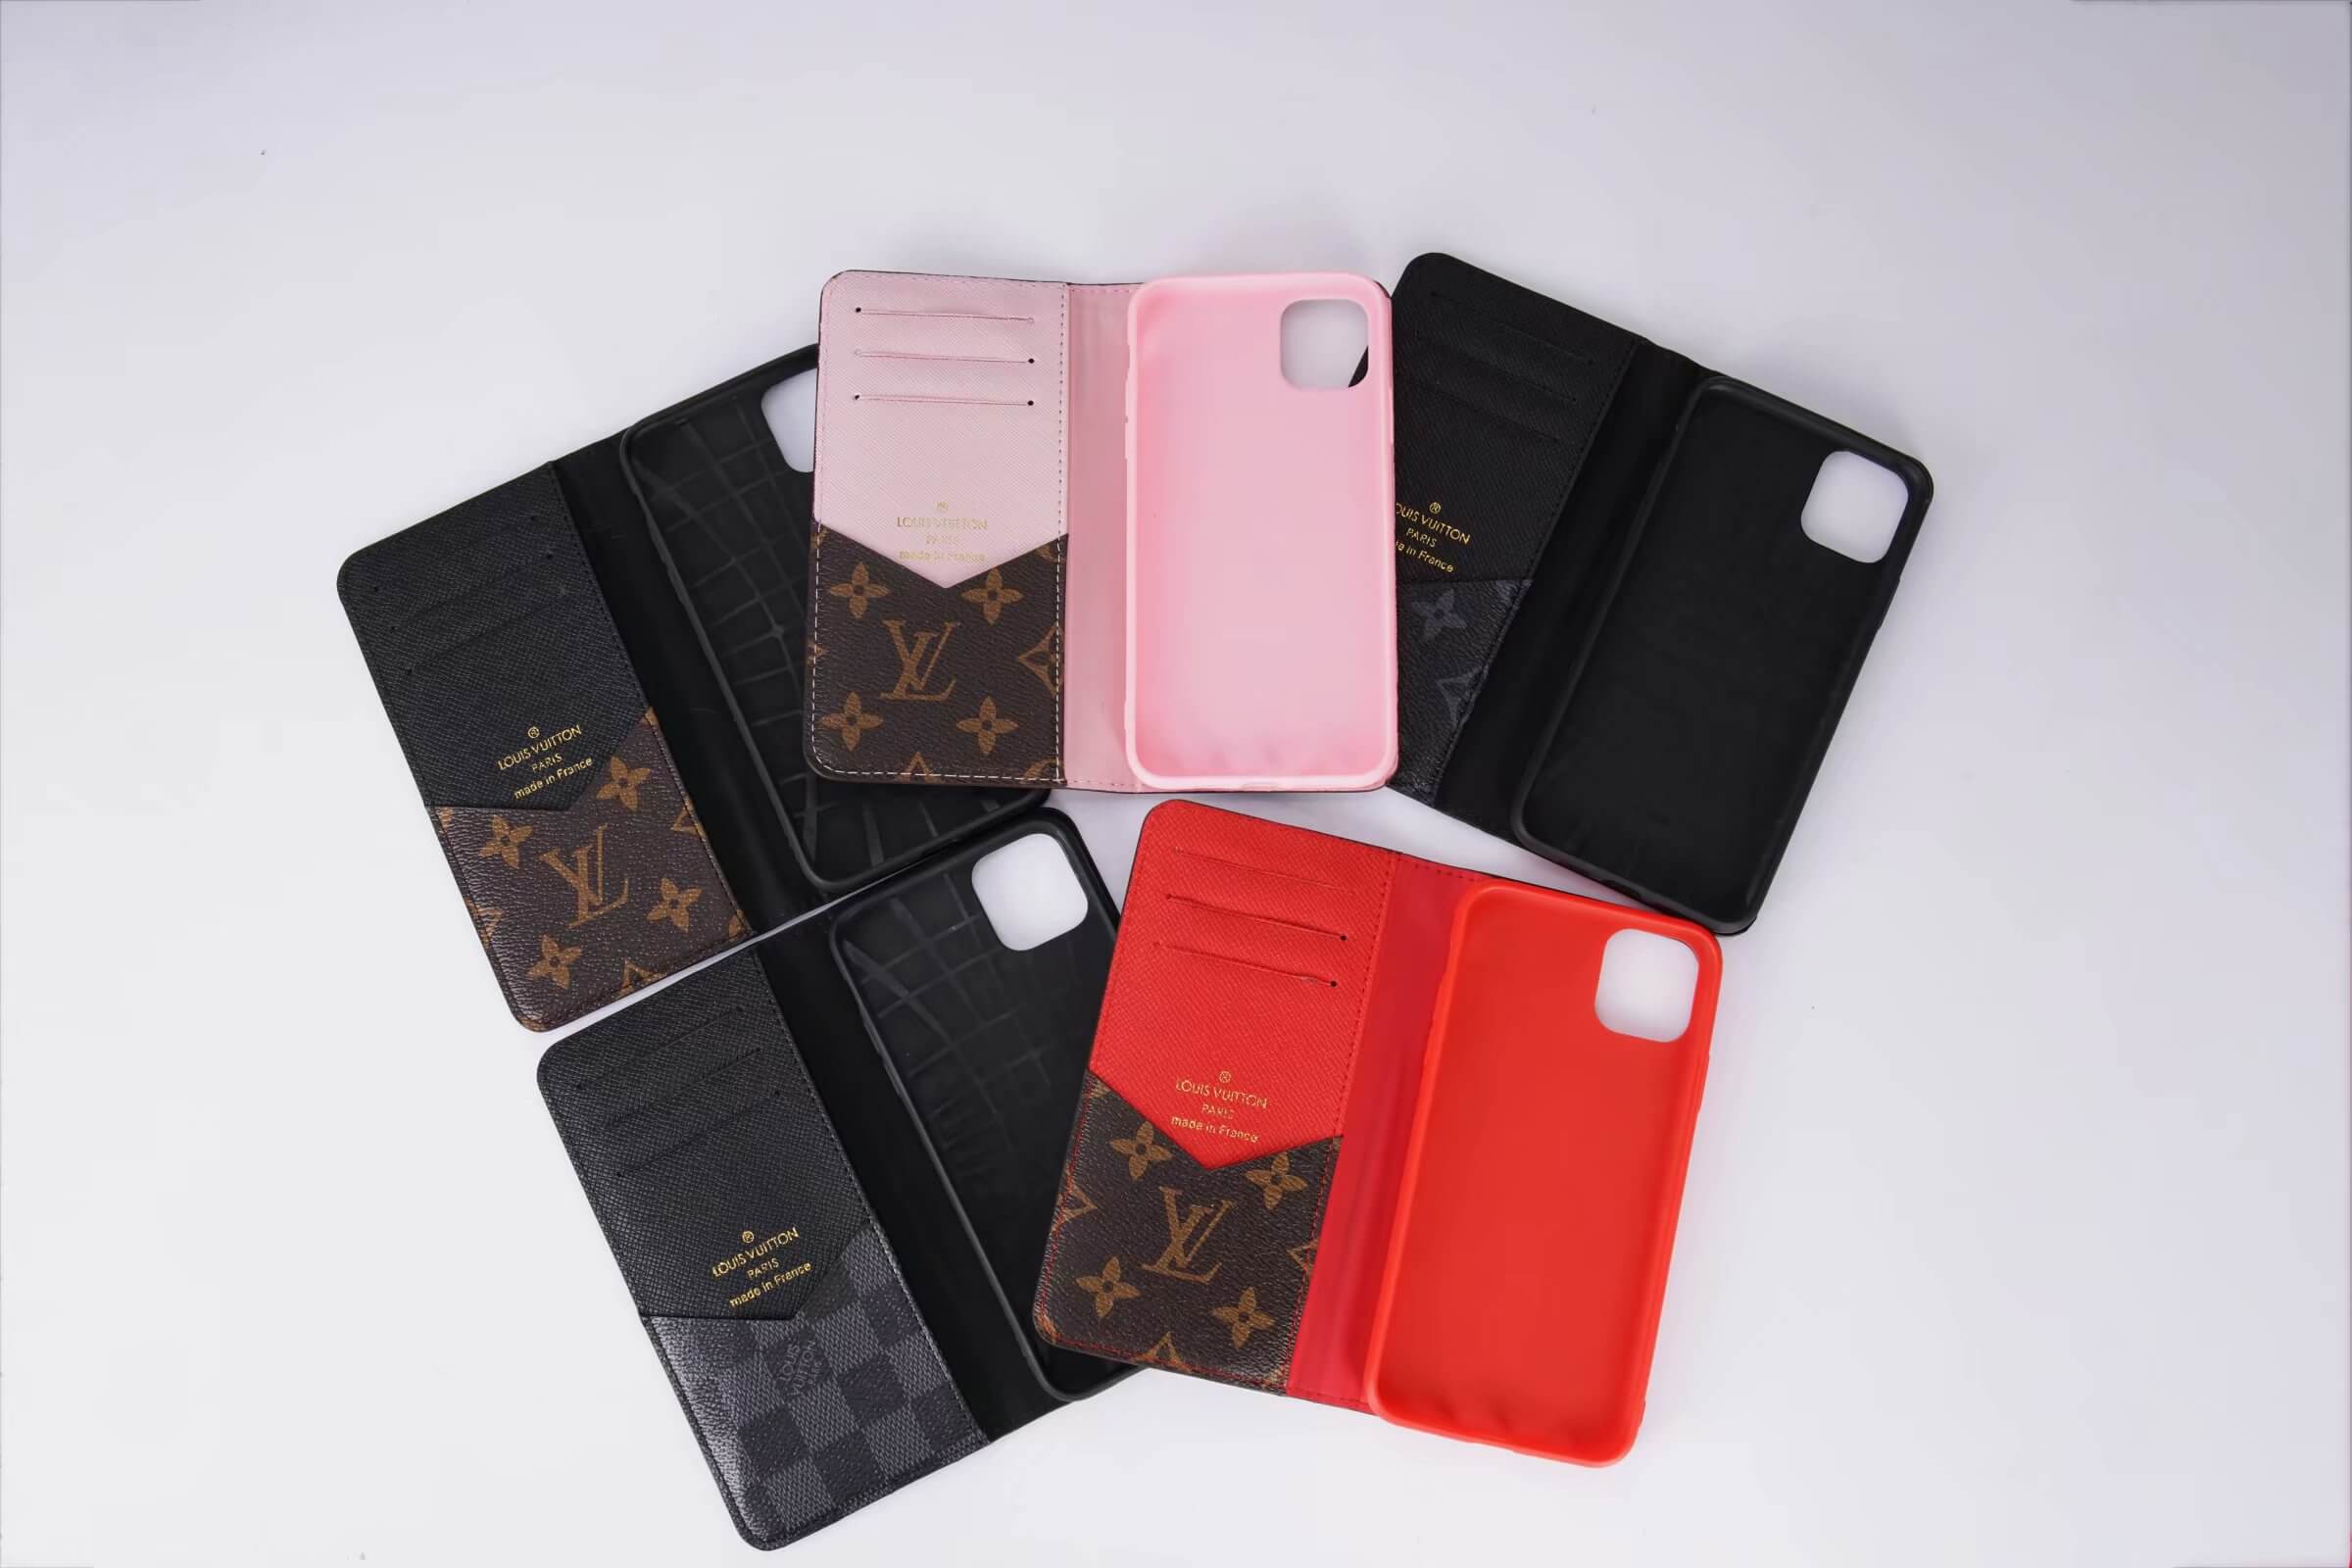 Louis Vuitton Damier Graphite Case iPhone 11,12,13,14,15 iPhone 11,12,13,14,15  Pro iPhone 11,12,13,14,15 Pro Max , iPhone Xs Max ,XR, X iPhone 6,7,8 plus